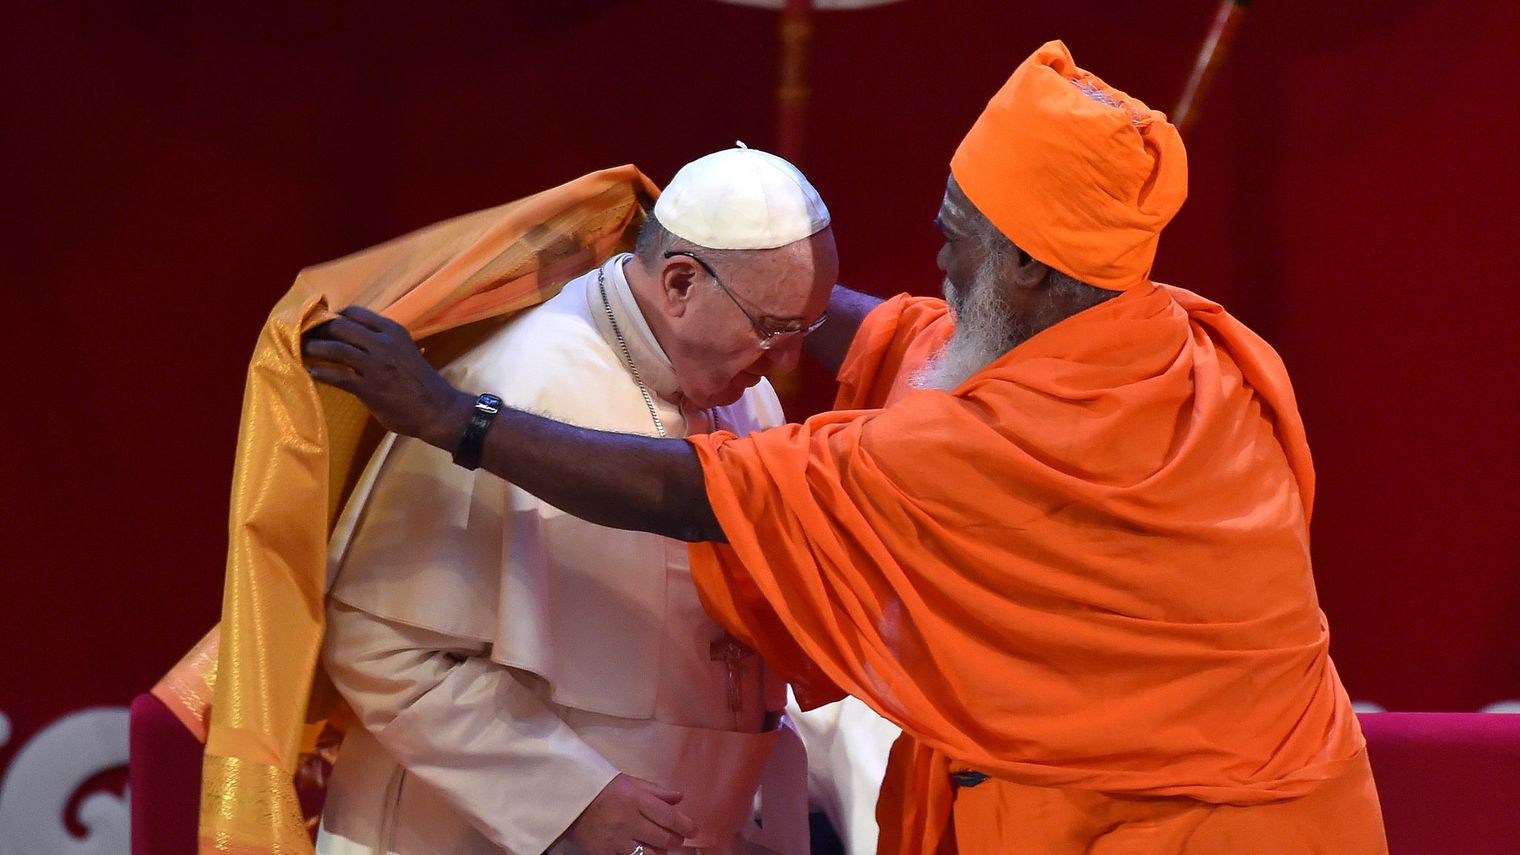 le-pape-francois-recoit-une-echarpe-safran-d-un-dignitaire-hindou-lors-d-une-rencontre-inter-religieuse-a-colombo-au-sri-lanka-le-13-janvier-2015_5187049